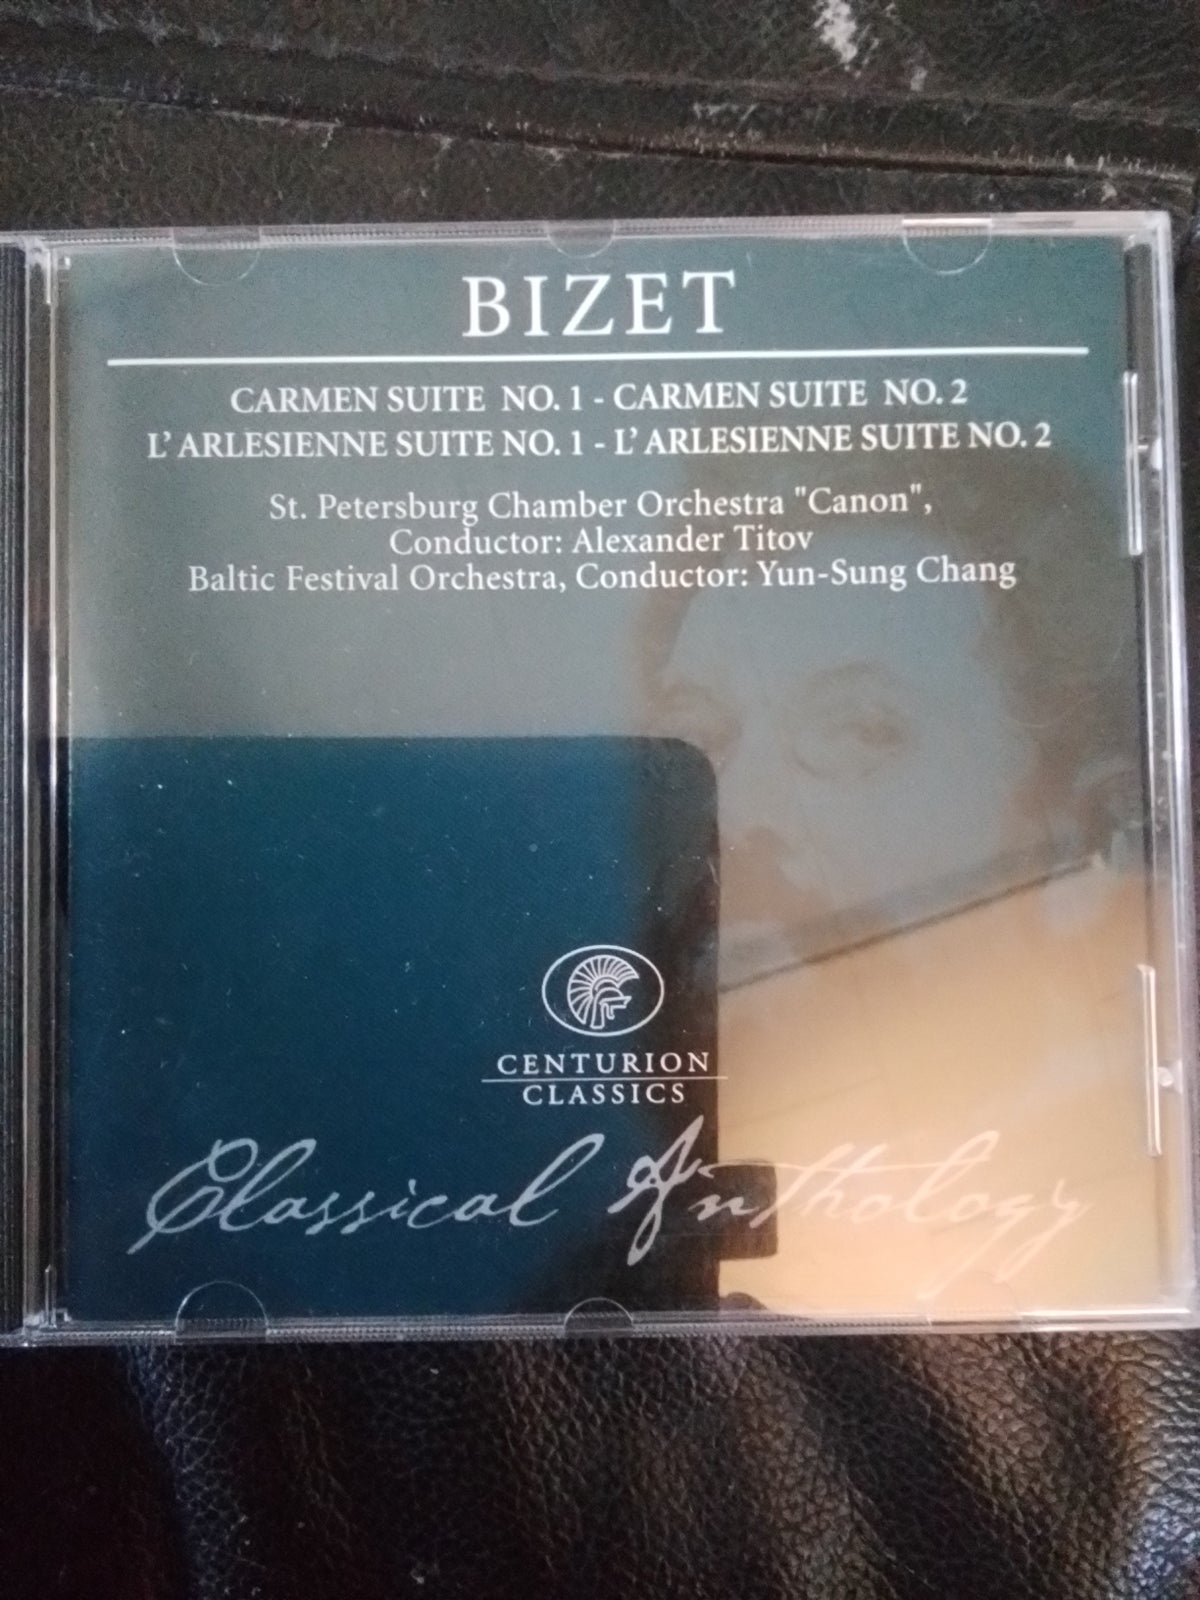 Bizet carmen suite no 1 og 2 mfl – dba.dk – Køb og Salg af Nyt og